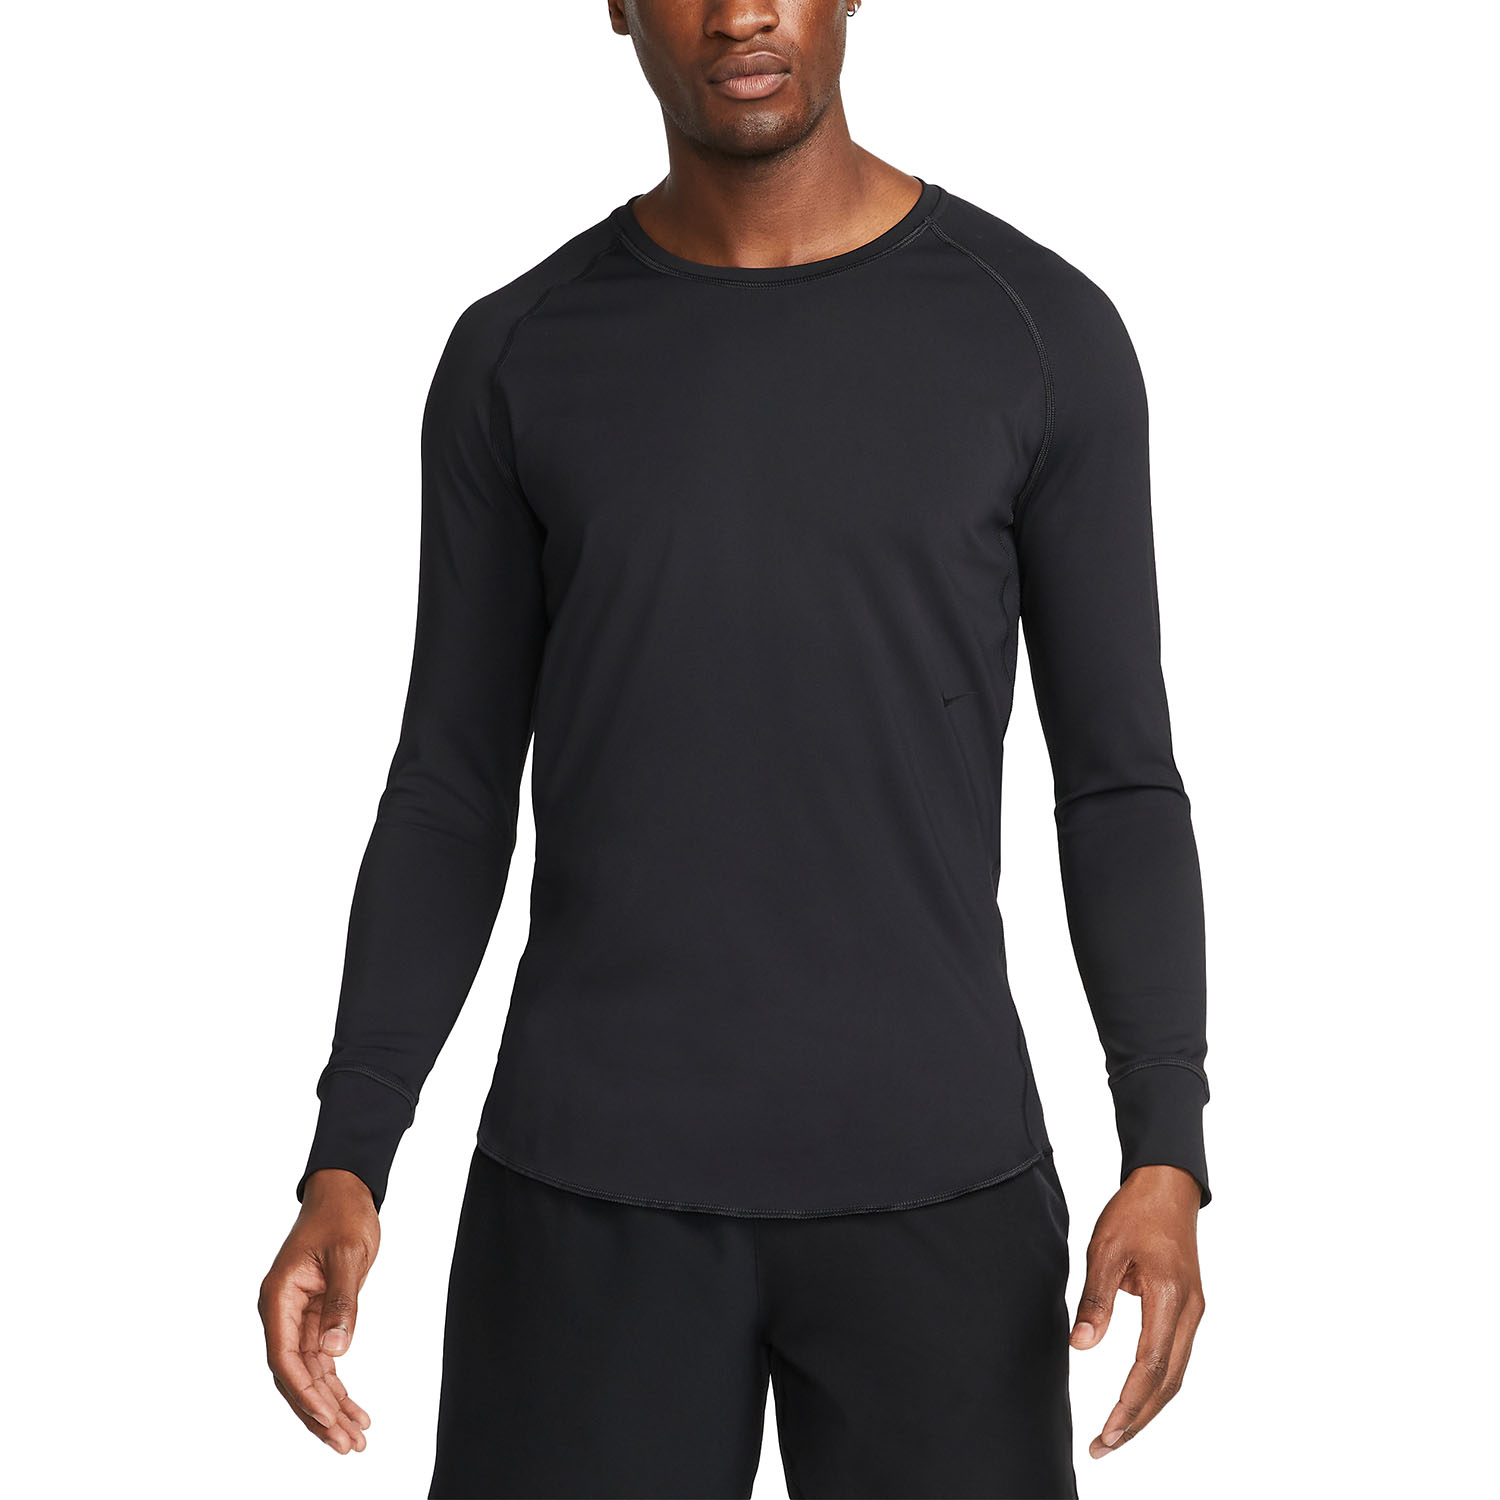 Nike Dri-FIT ADV A.P.S. Men's Training Shirt - Black/White